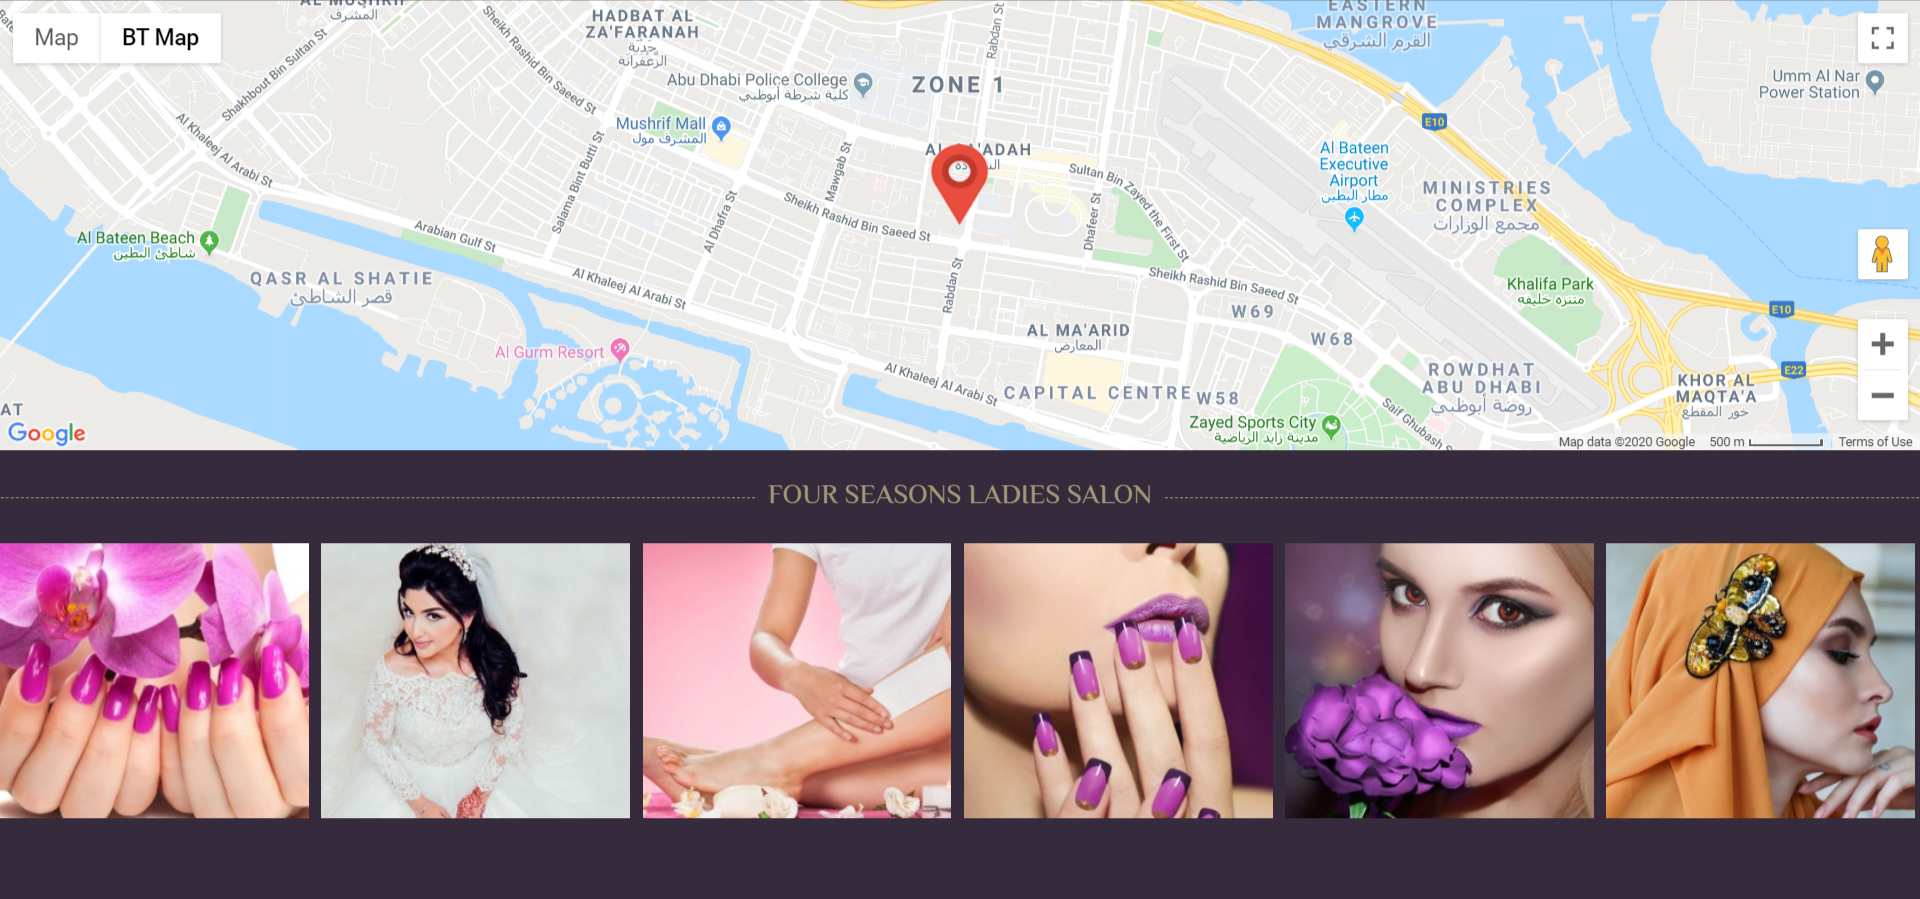 تصميم موقع الكتروني لصالون تجميل فورسيزون في جدة السعودية